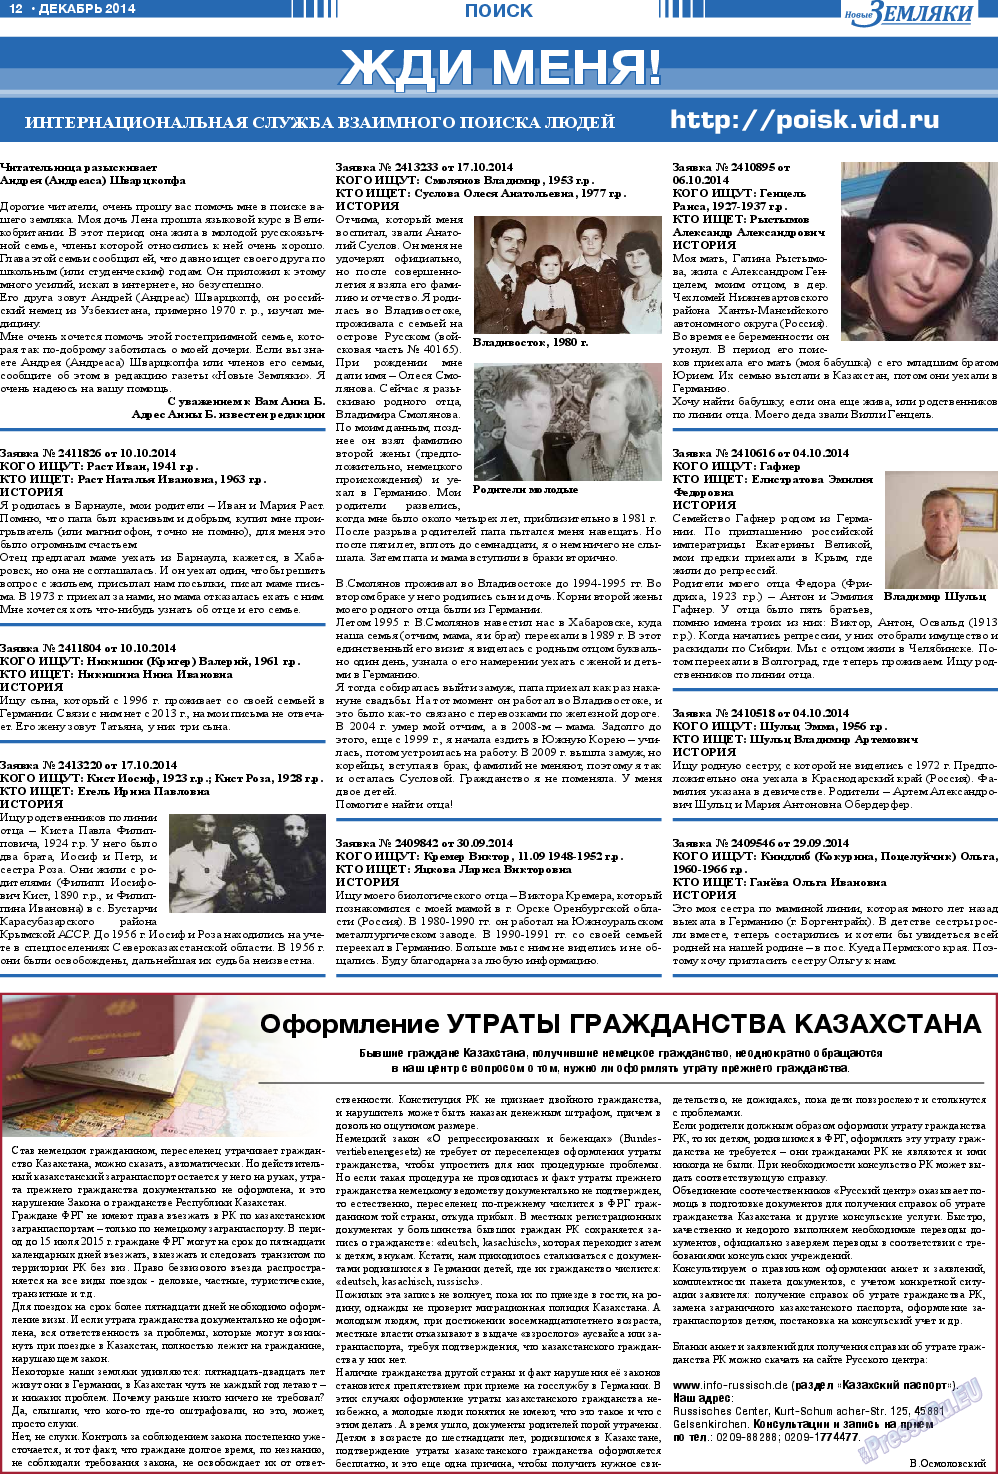 Новые Земляки (газета). 2014 год, номер 12, стр. 12